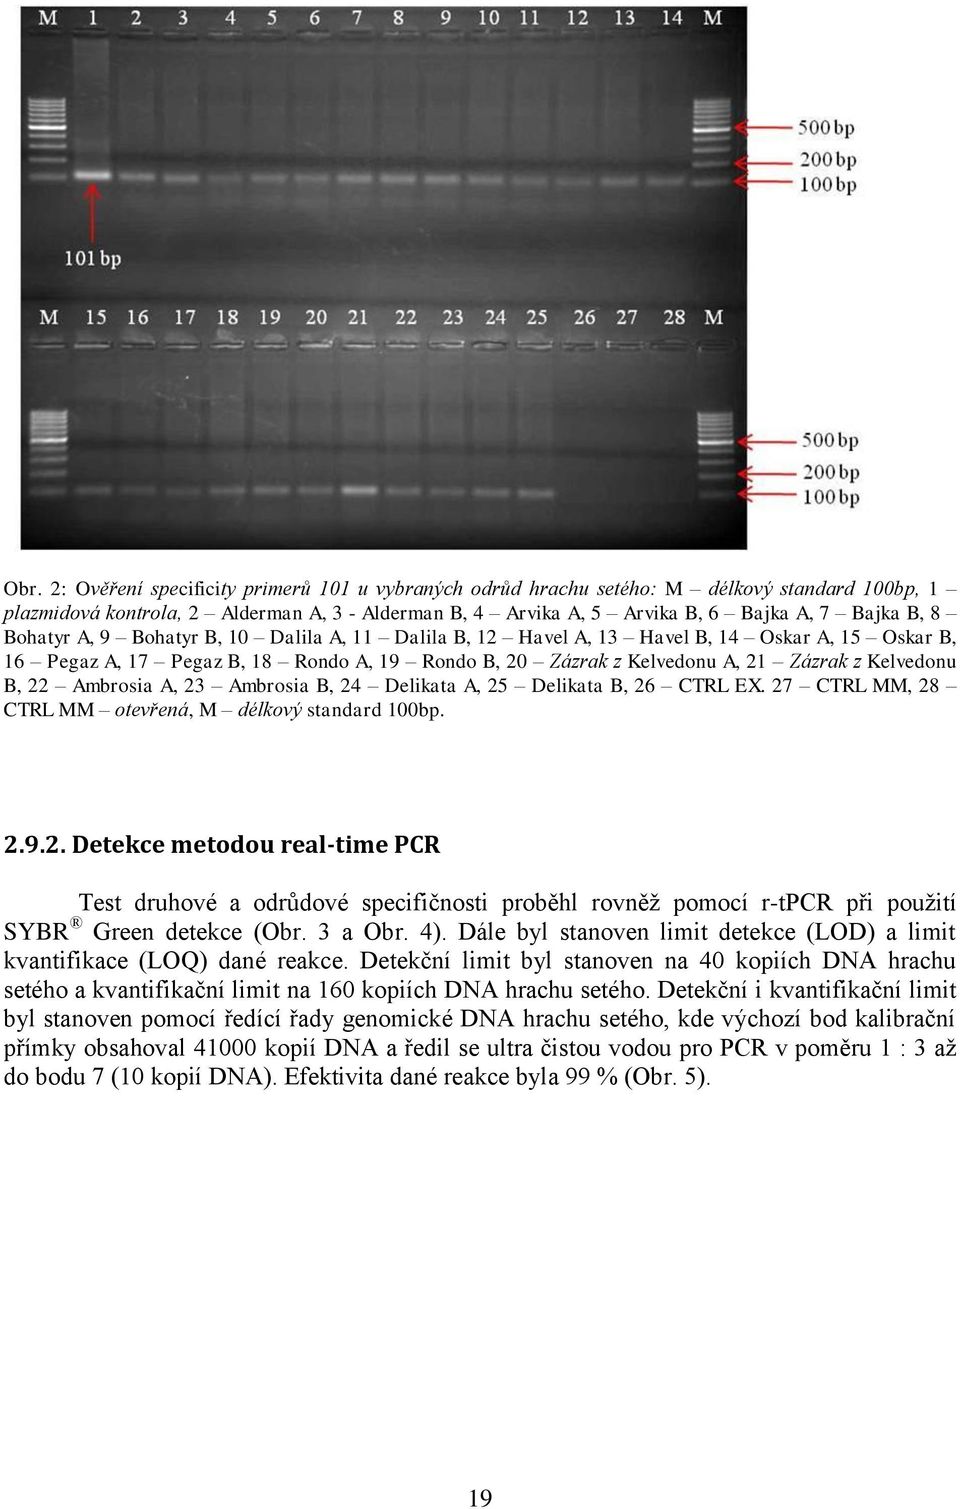 Ambrosia A, 23 Ambrosia B, 24 Delikata A, 25 Delikata B, 26 CTRL EX. 27 CTRL MM, 28 CTRL MM otevřená, M délkový standard 100bp. 2.9.2. Detekce metodou real-time PCR Test druhové a odrůdové specifičnosti proběhl rovněž pomocí r-tpcr při použití SYBR Green detekce (Obr.